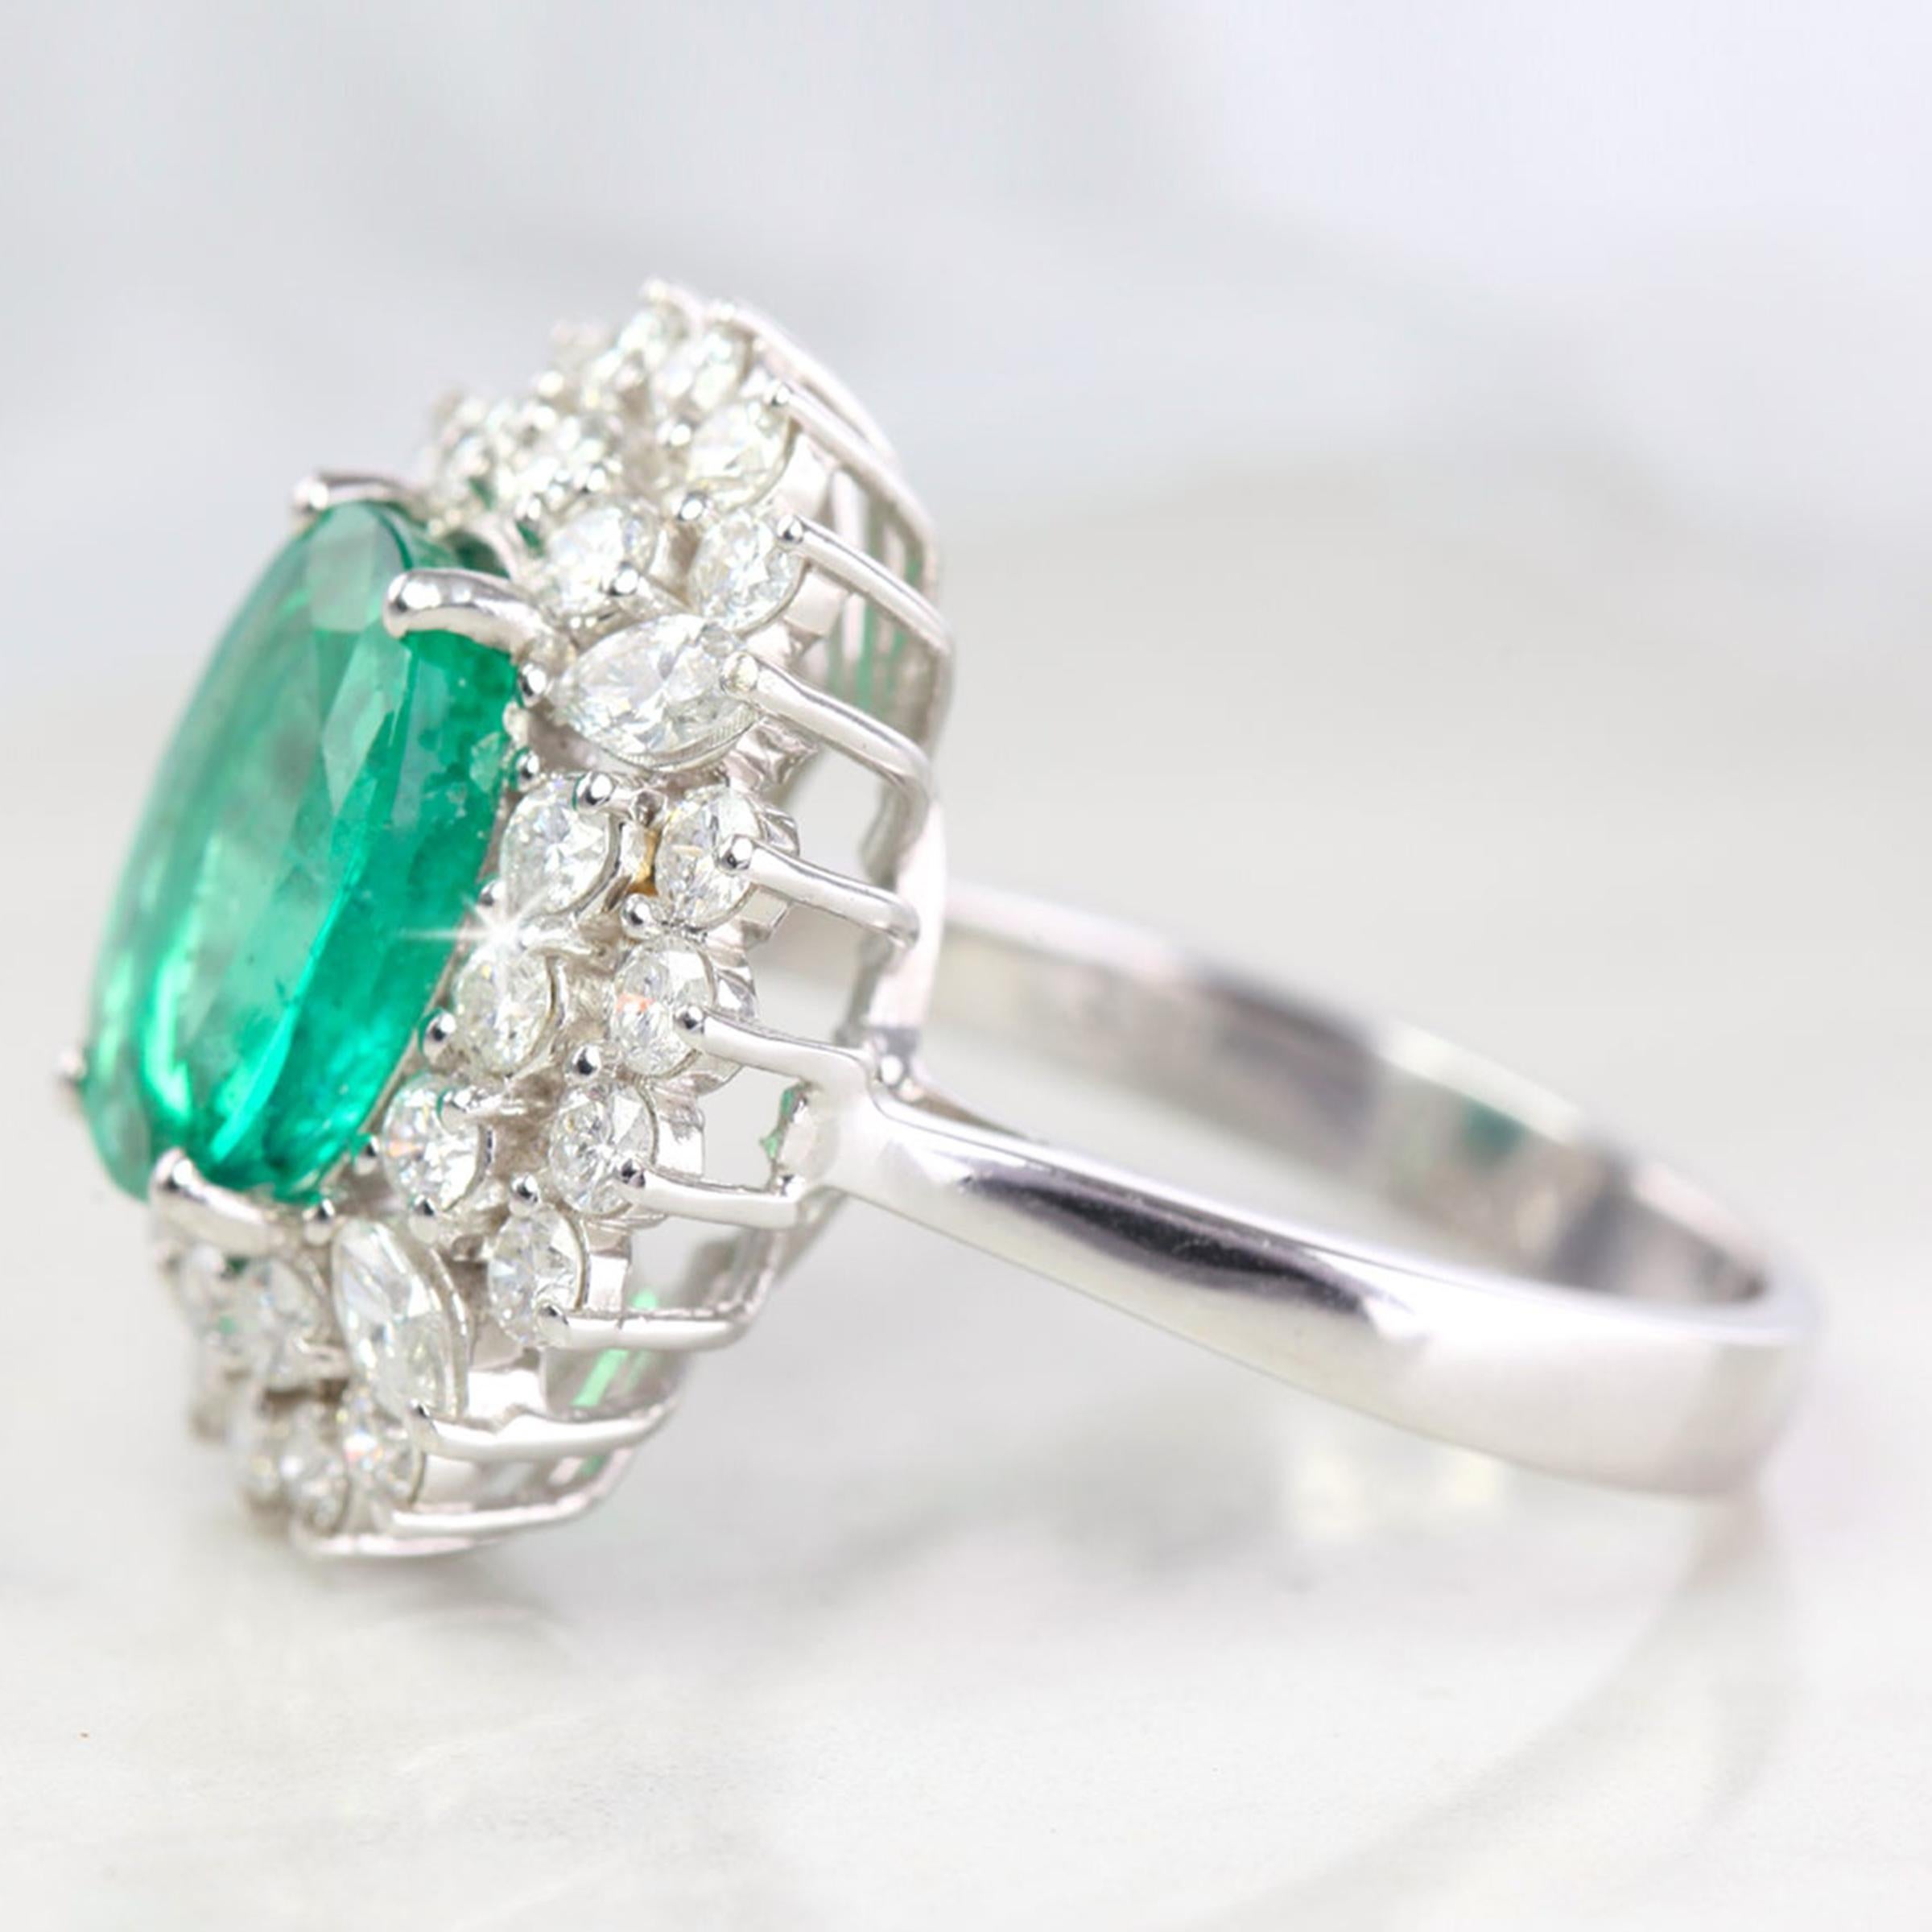 Oval Cut Zambian Emerald with Diamond Ring